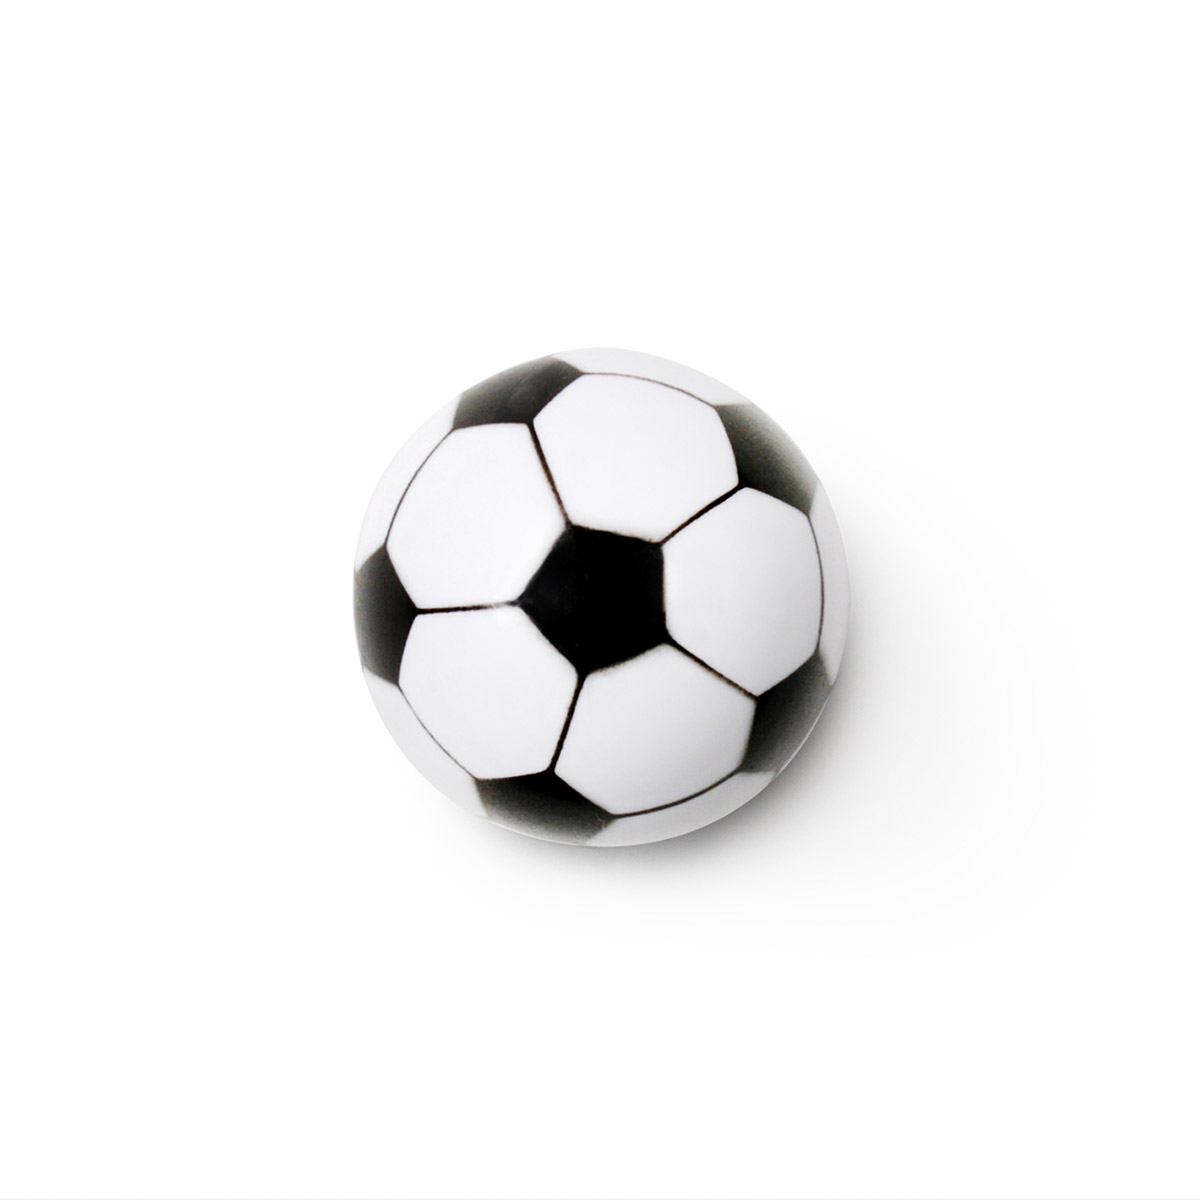 Pomo de plástico con acabado pelota, dimensiones: 33x33x33mm Ø: 33mm